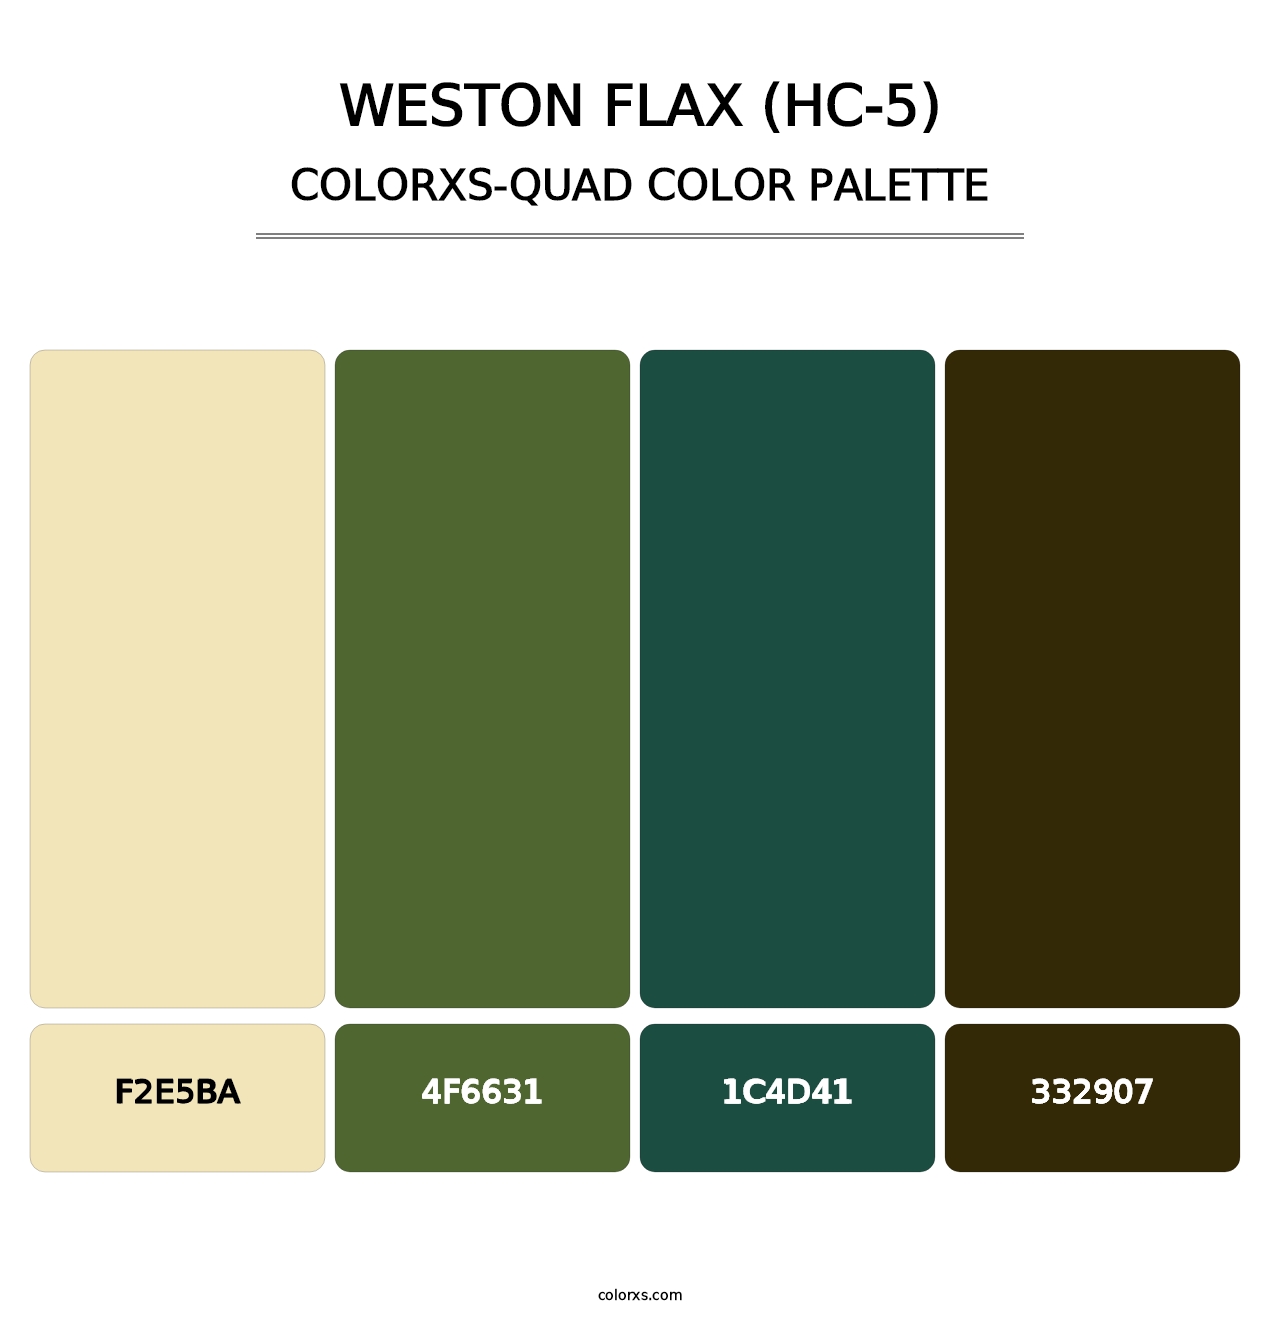 Weston Flax (HC-5) - Colorxs Quad Palette